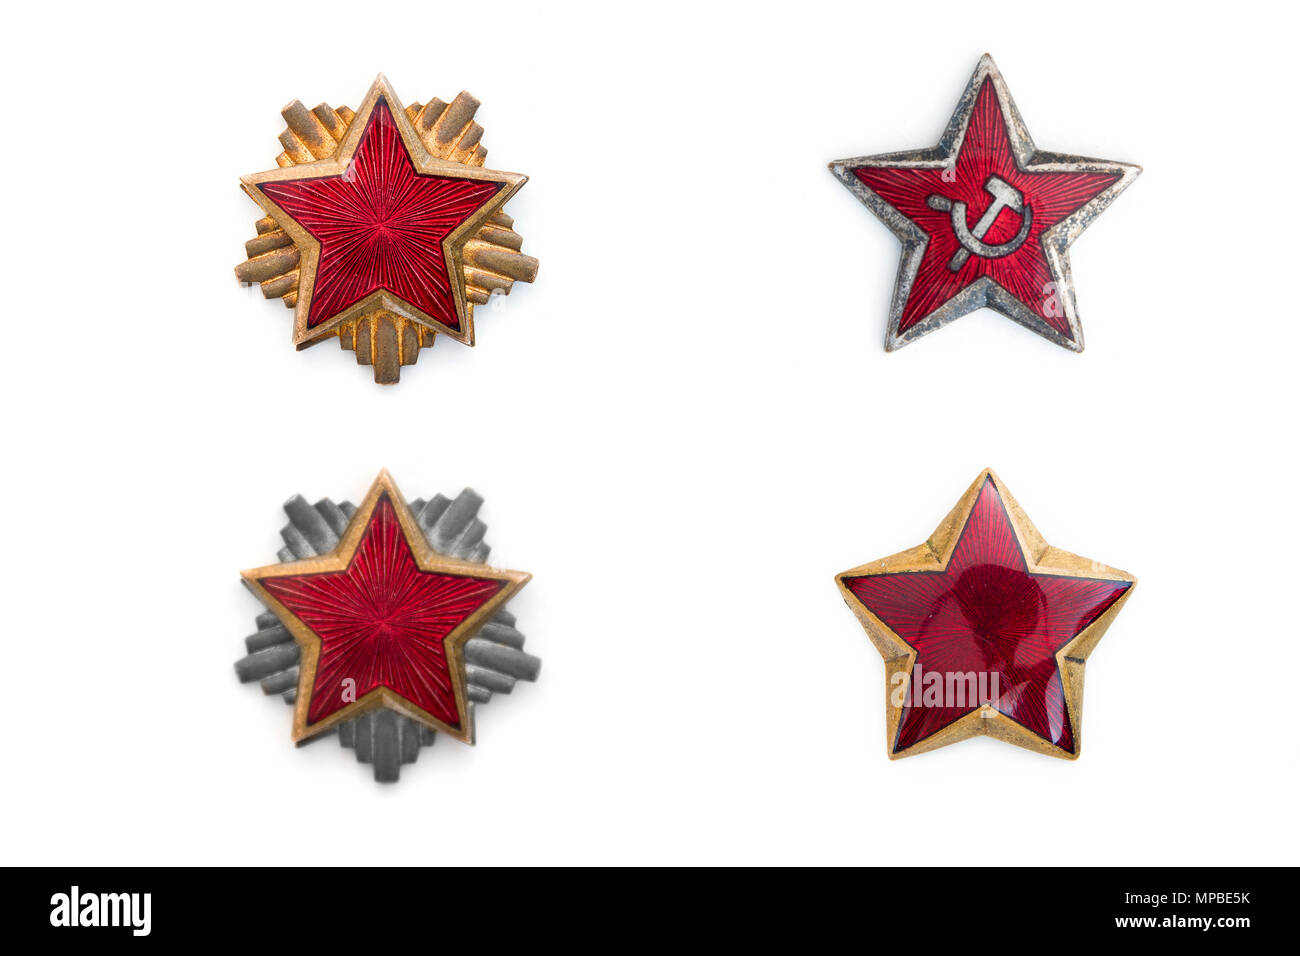 Vecchie stelle rosse da comunista cappucci militare isolato su sfondo bianco Foto Stock